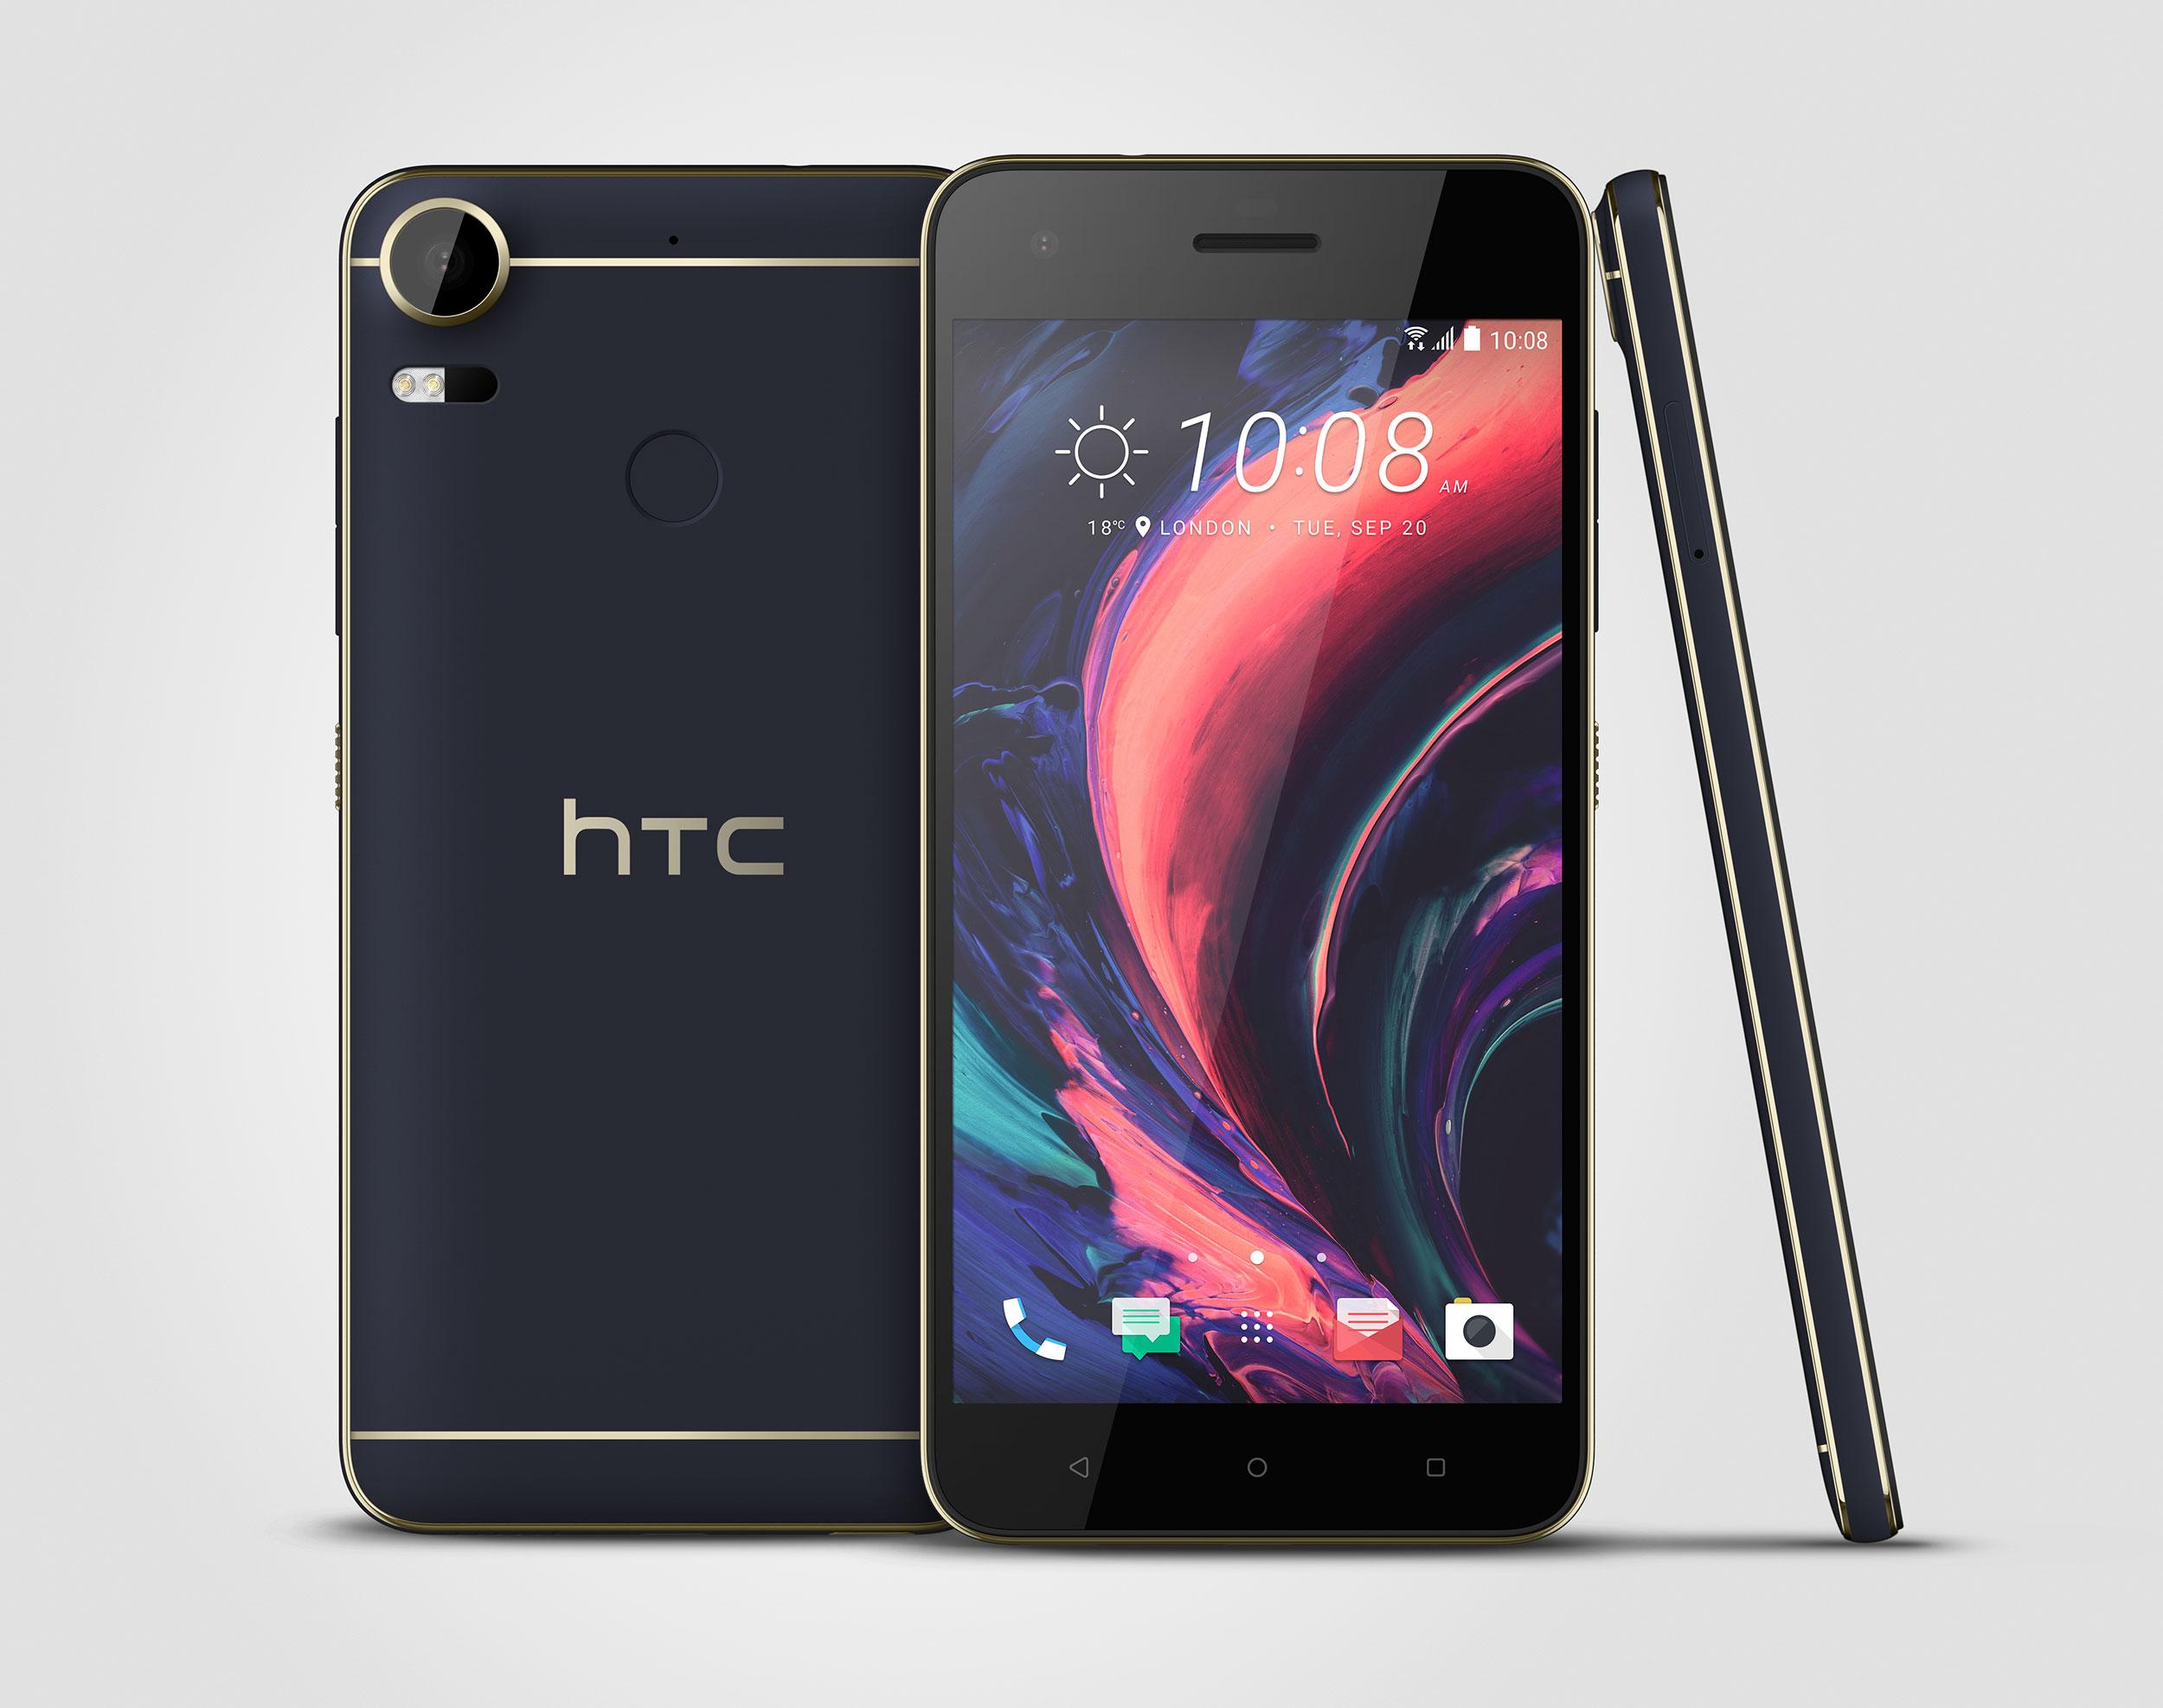 HTC presentaría un dispositivo Desire junto al HTC 10